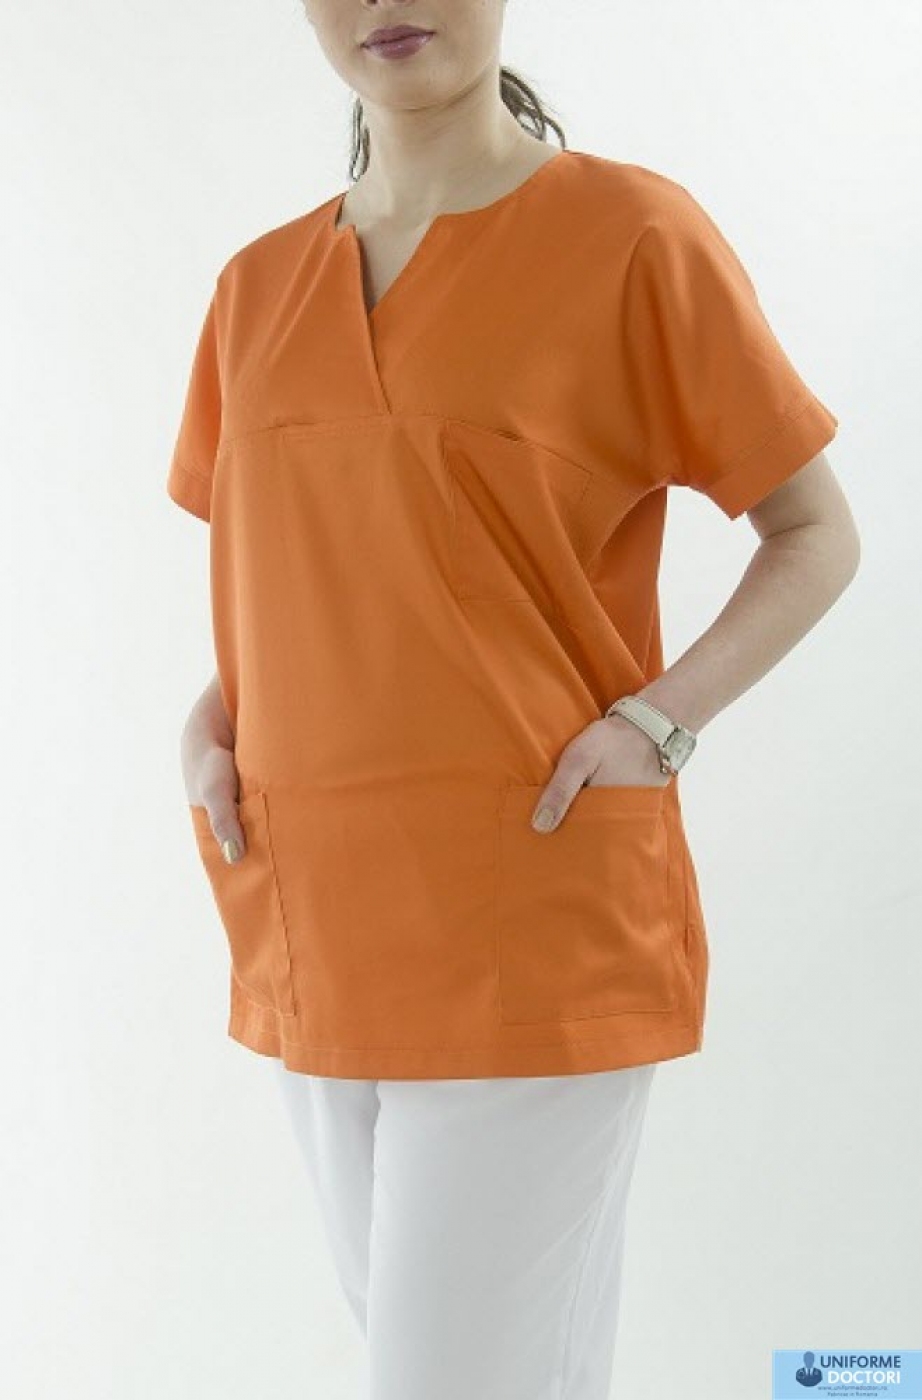 Uniforme medicale – Bluza medicala cu maneca scurta si guler in achior